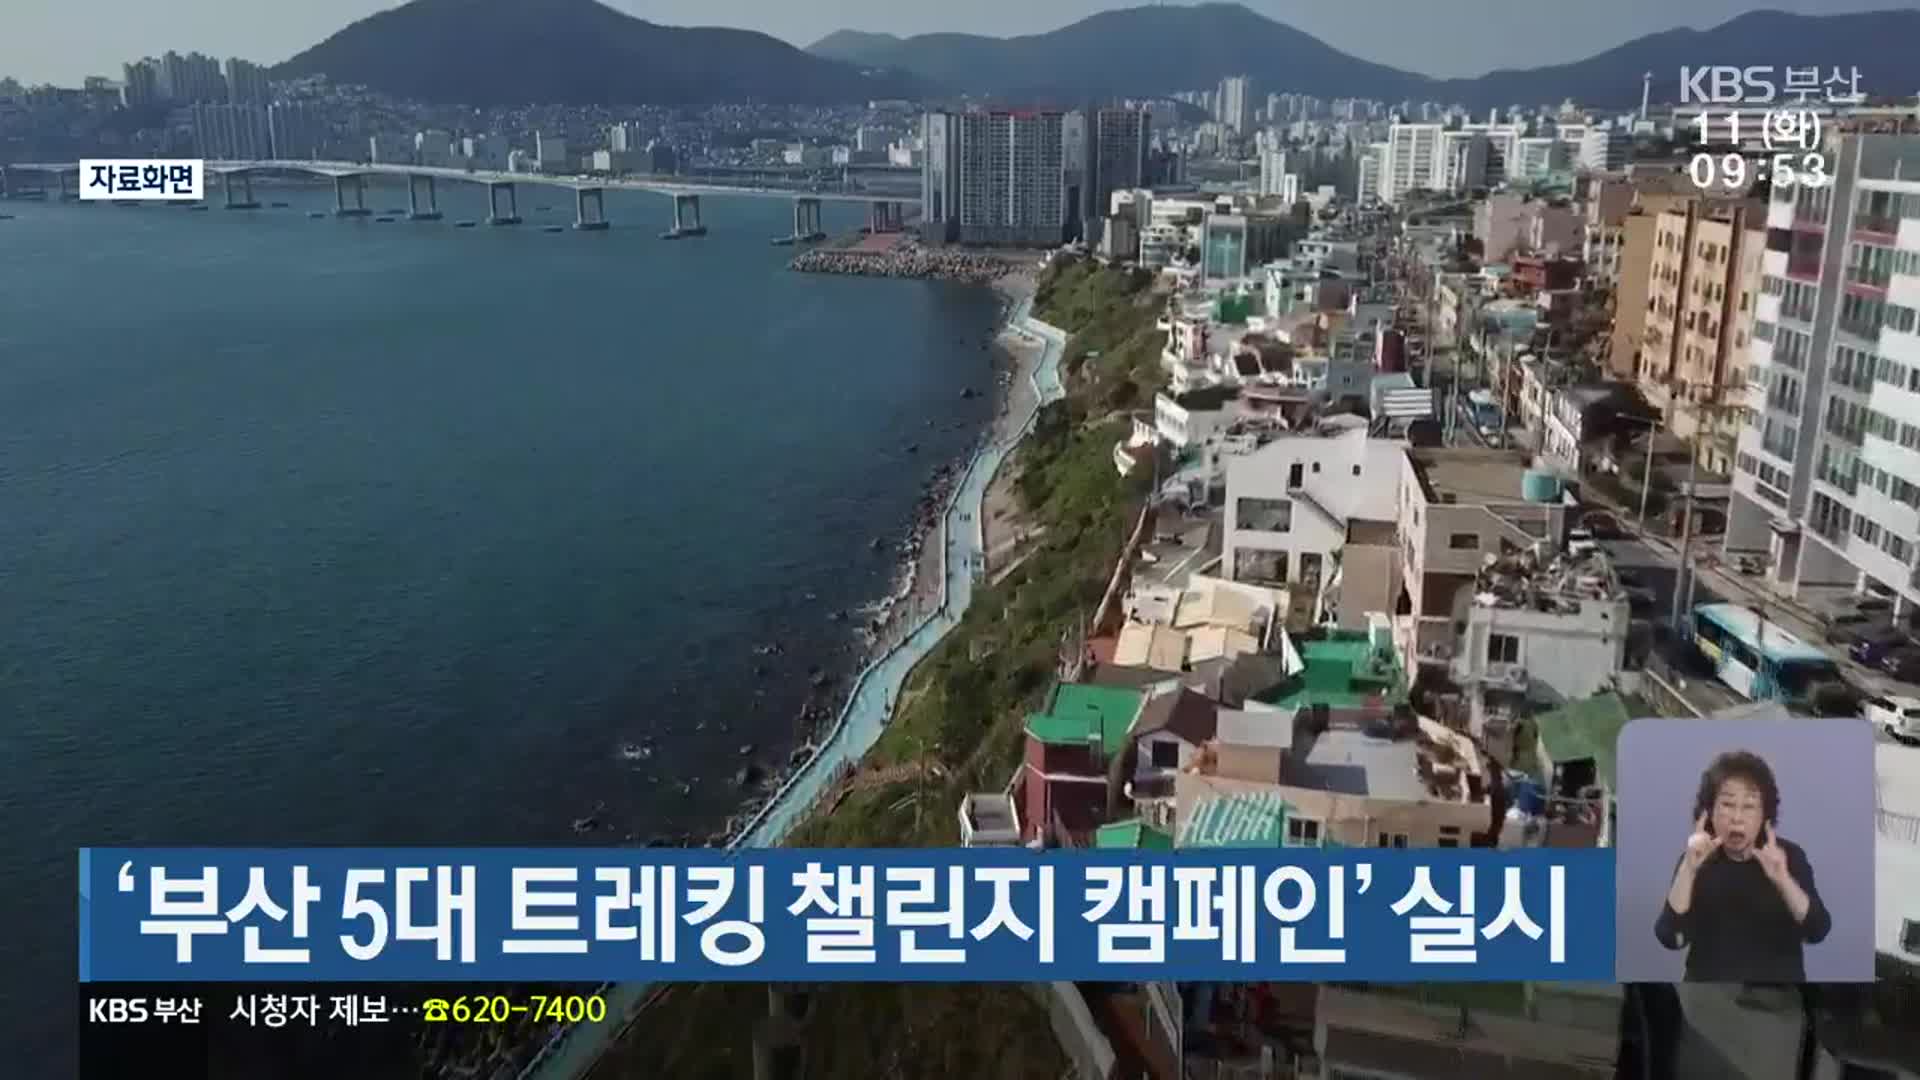 ‘부산 5대 트레킹 챌린지 캠페인’ 실시